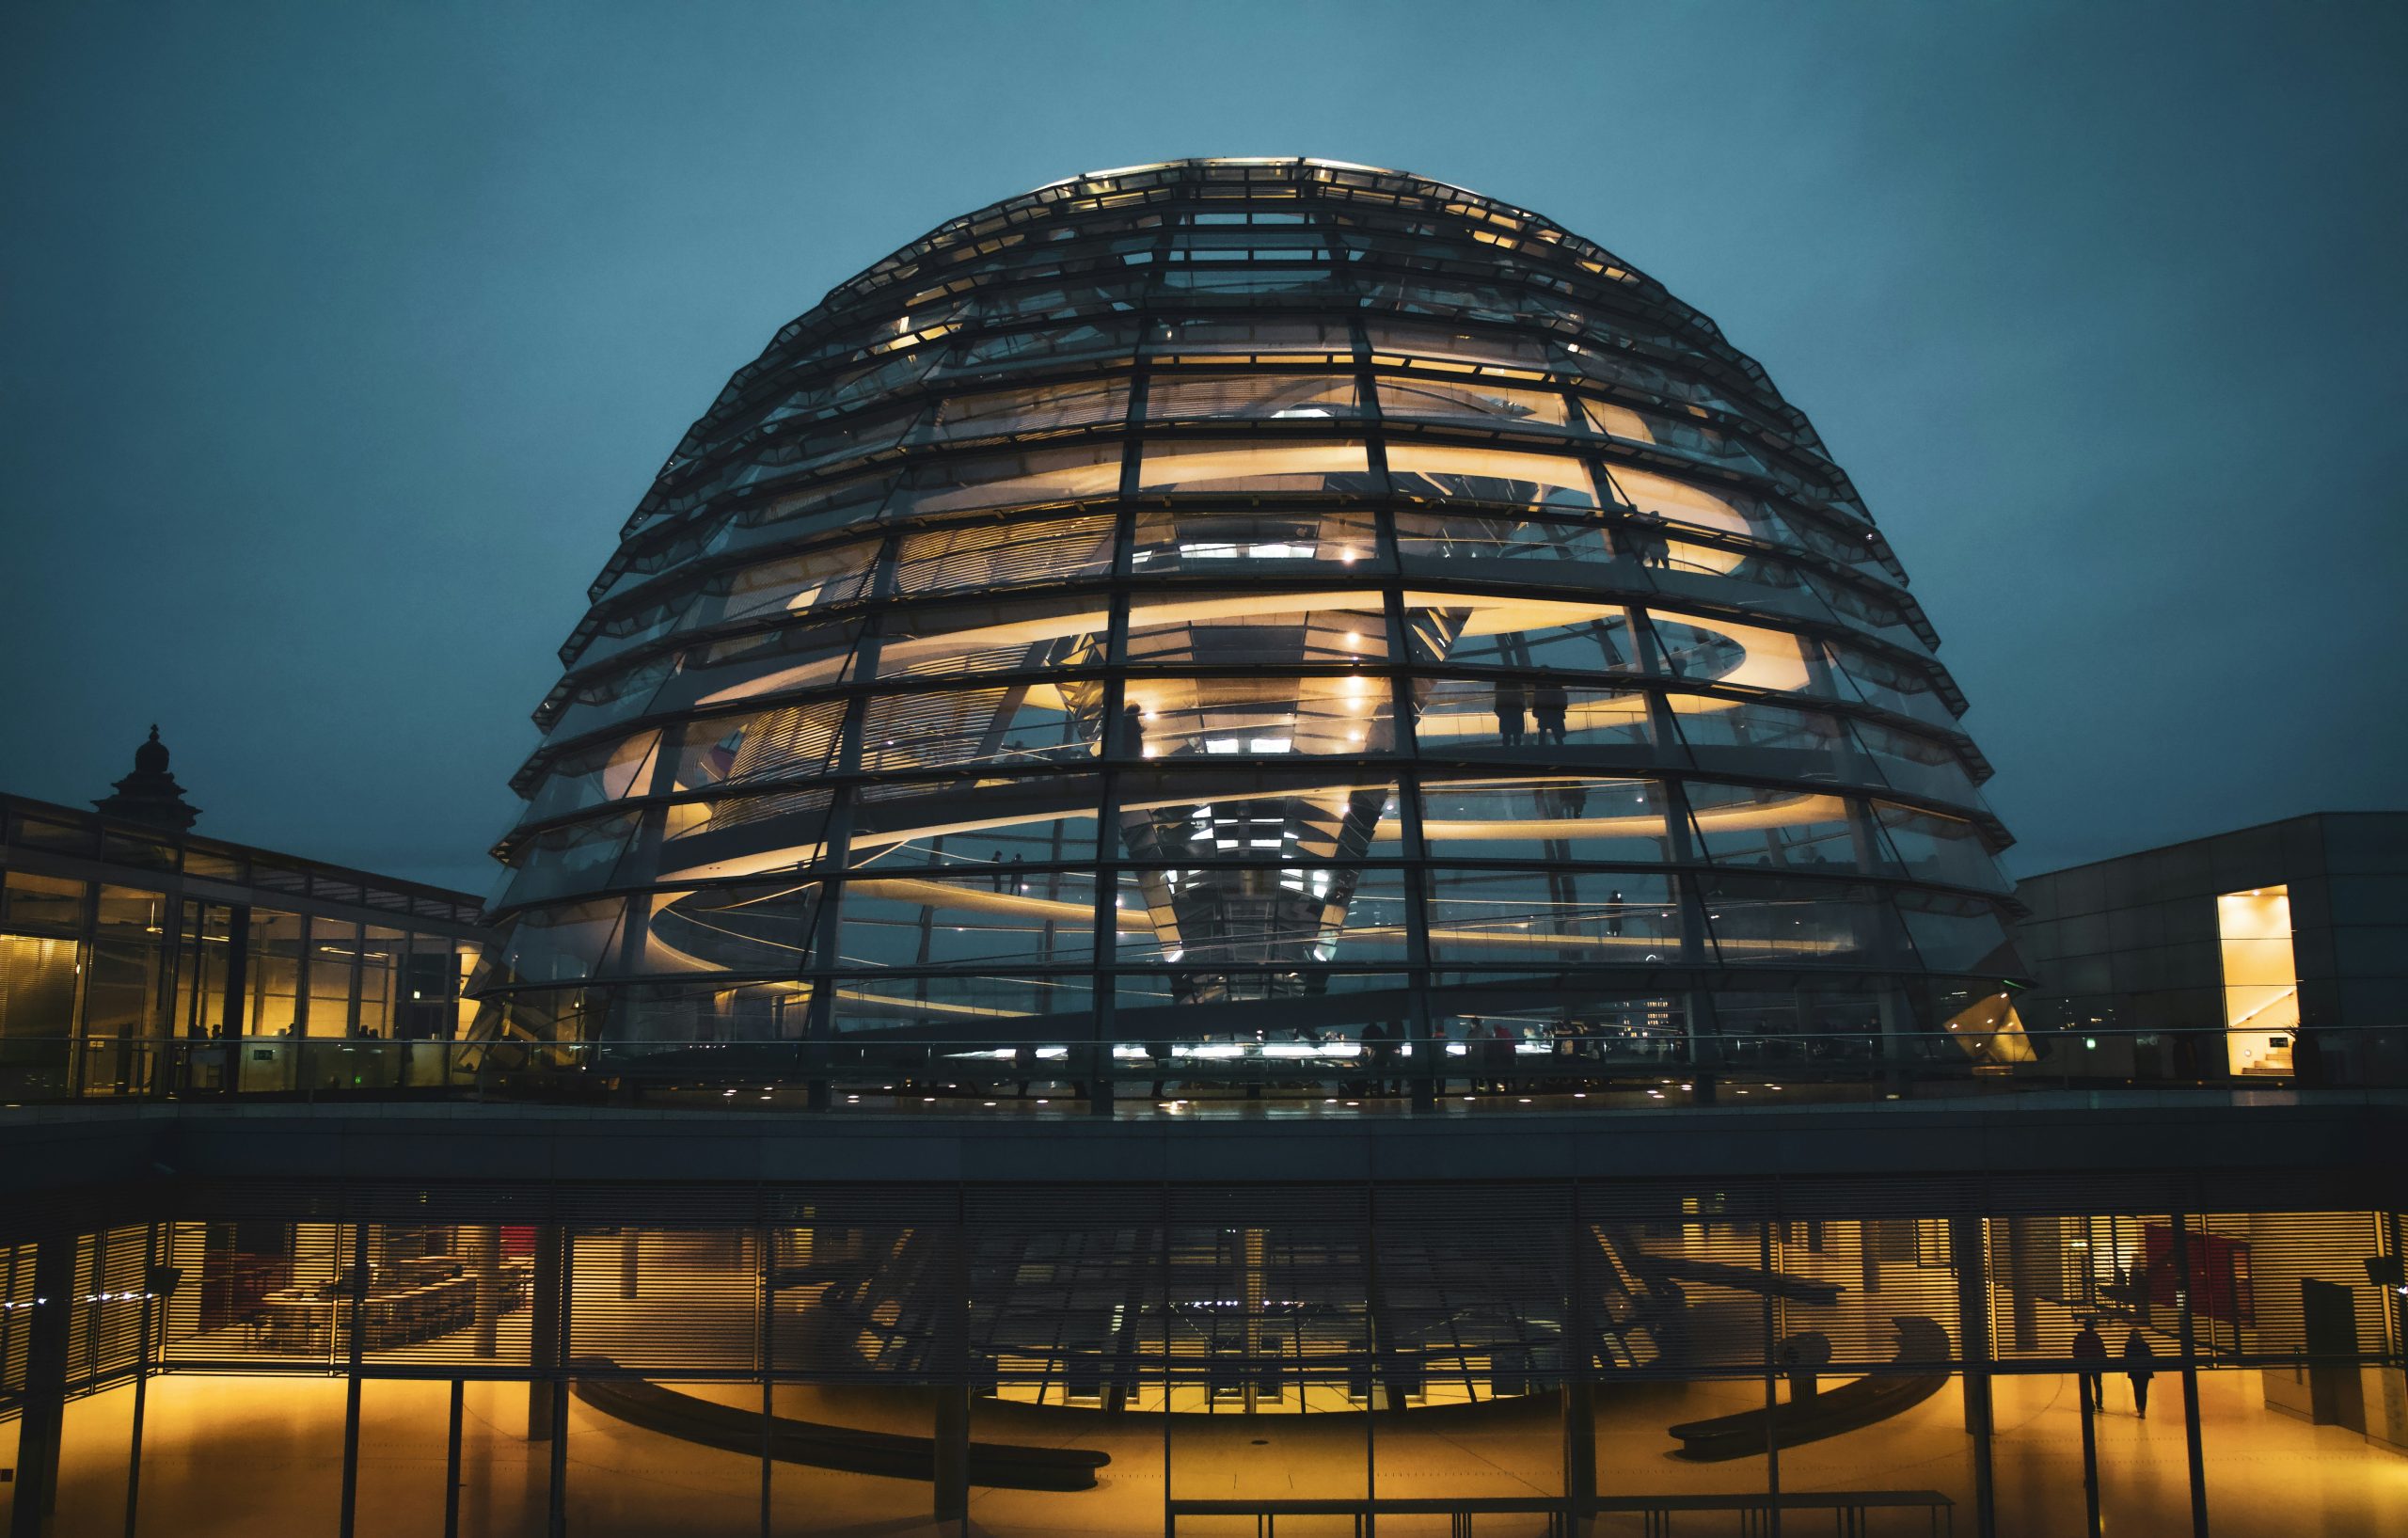 Das Bild zeigt das beleuchtete Reichstagsgebäude in Berlin bei Dämmerung. Die moderne Glaskuppel, ein markantes Merkmal des Gebäudes, ist deutlich sichtbar und beleuchtet, was einen starken Kontrast zur dunklen Umgebung bildet. Der im Reichstagsgebäude tagende Bundestag hat kürzlich einen Gesetzentwurf zur Bürokratieentlastung beschlossen, über den wir in unserem Mandantennewsletter informieren.